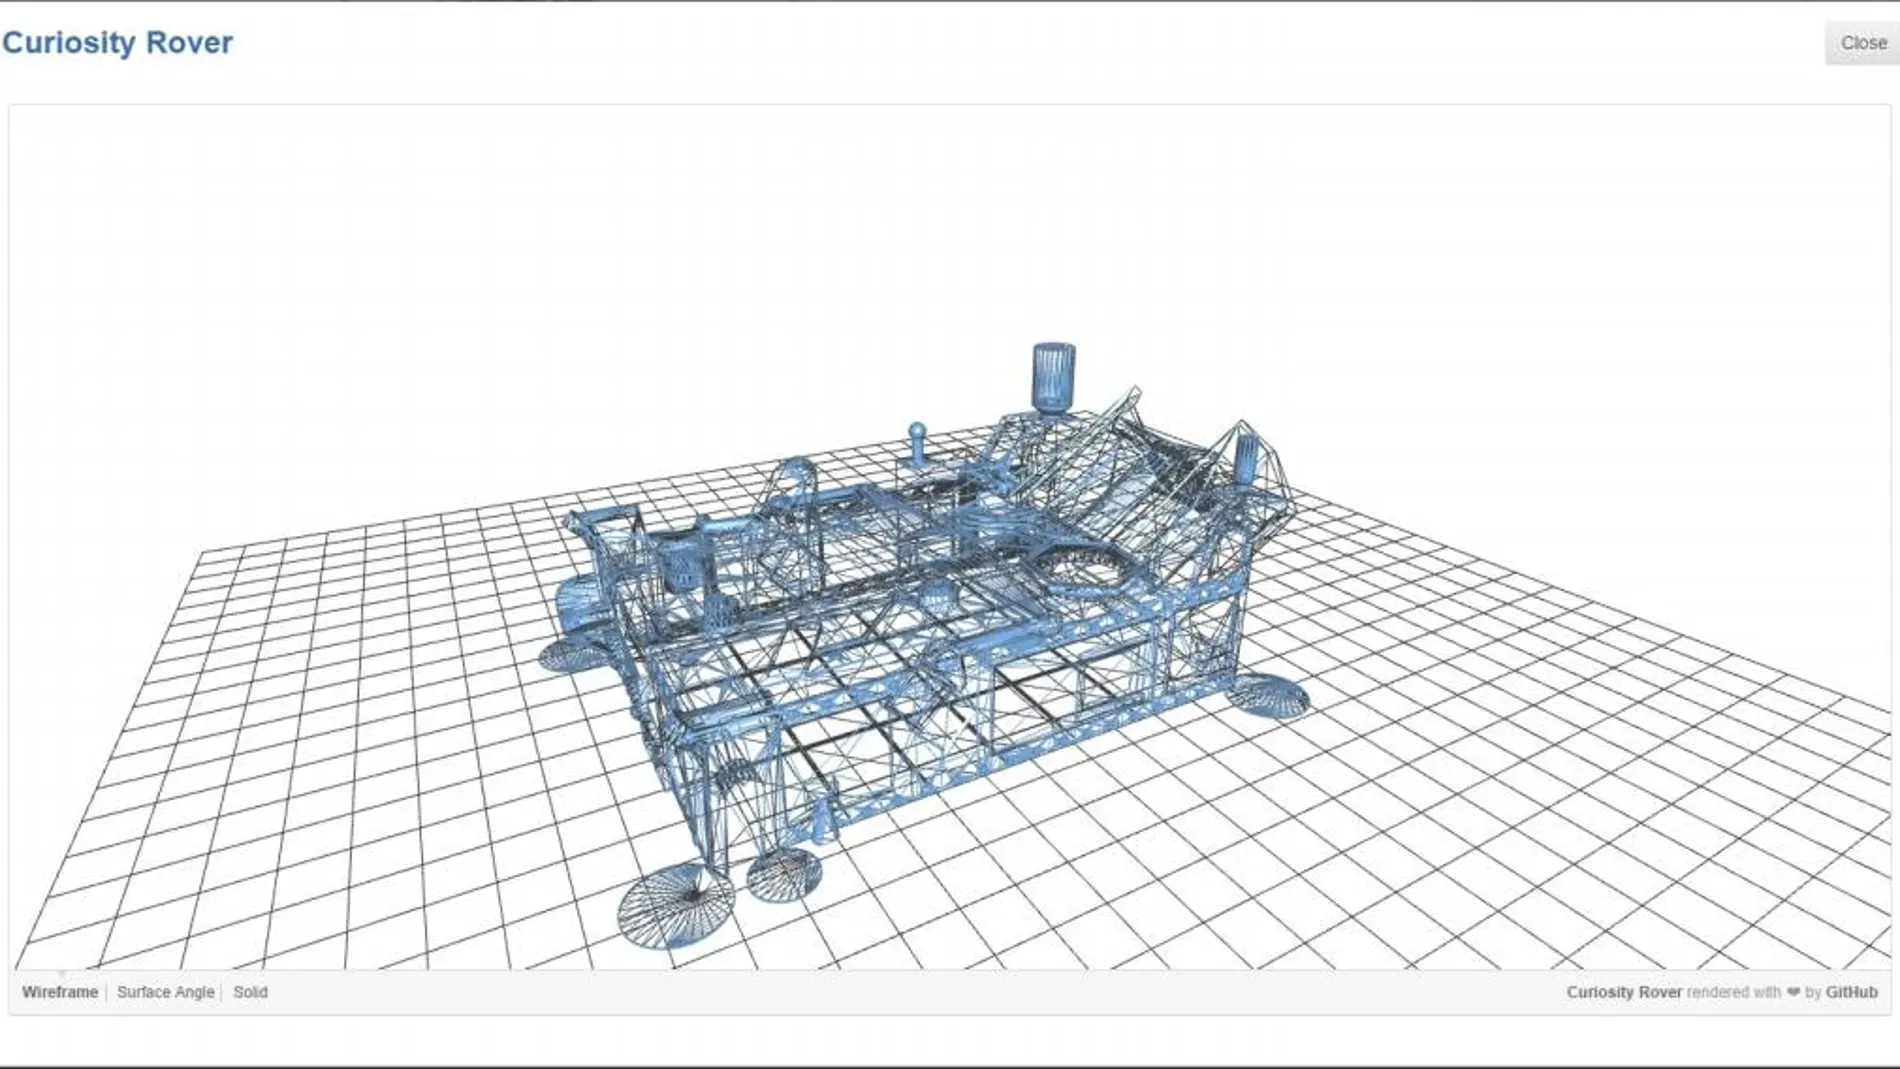 Planos en 3D del Curisoty Rover